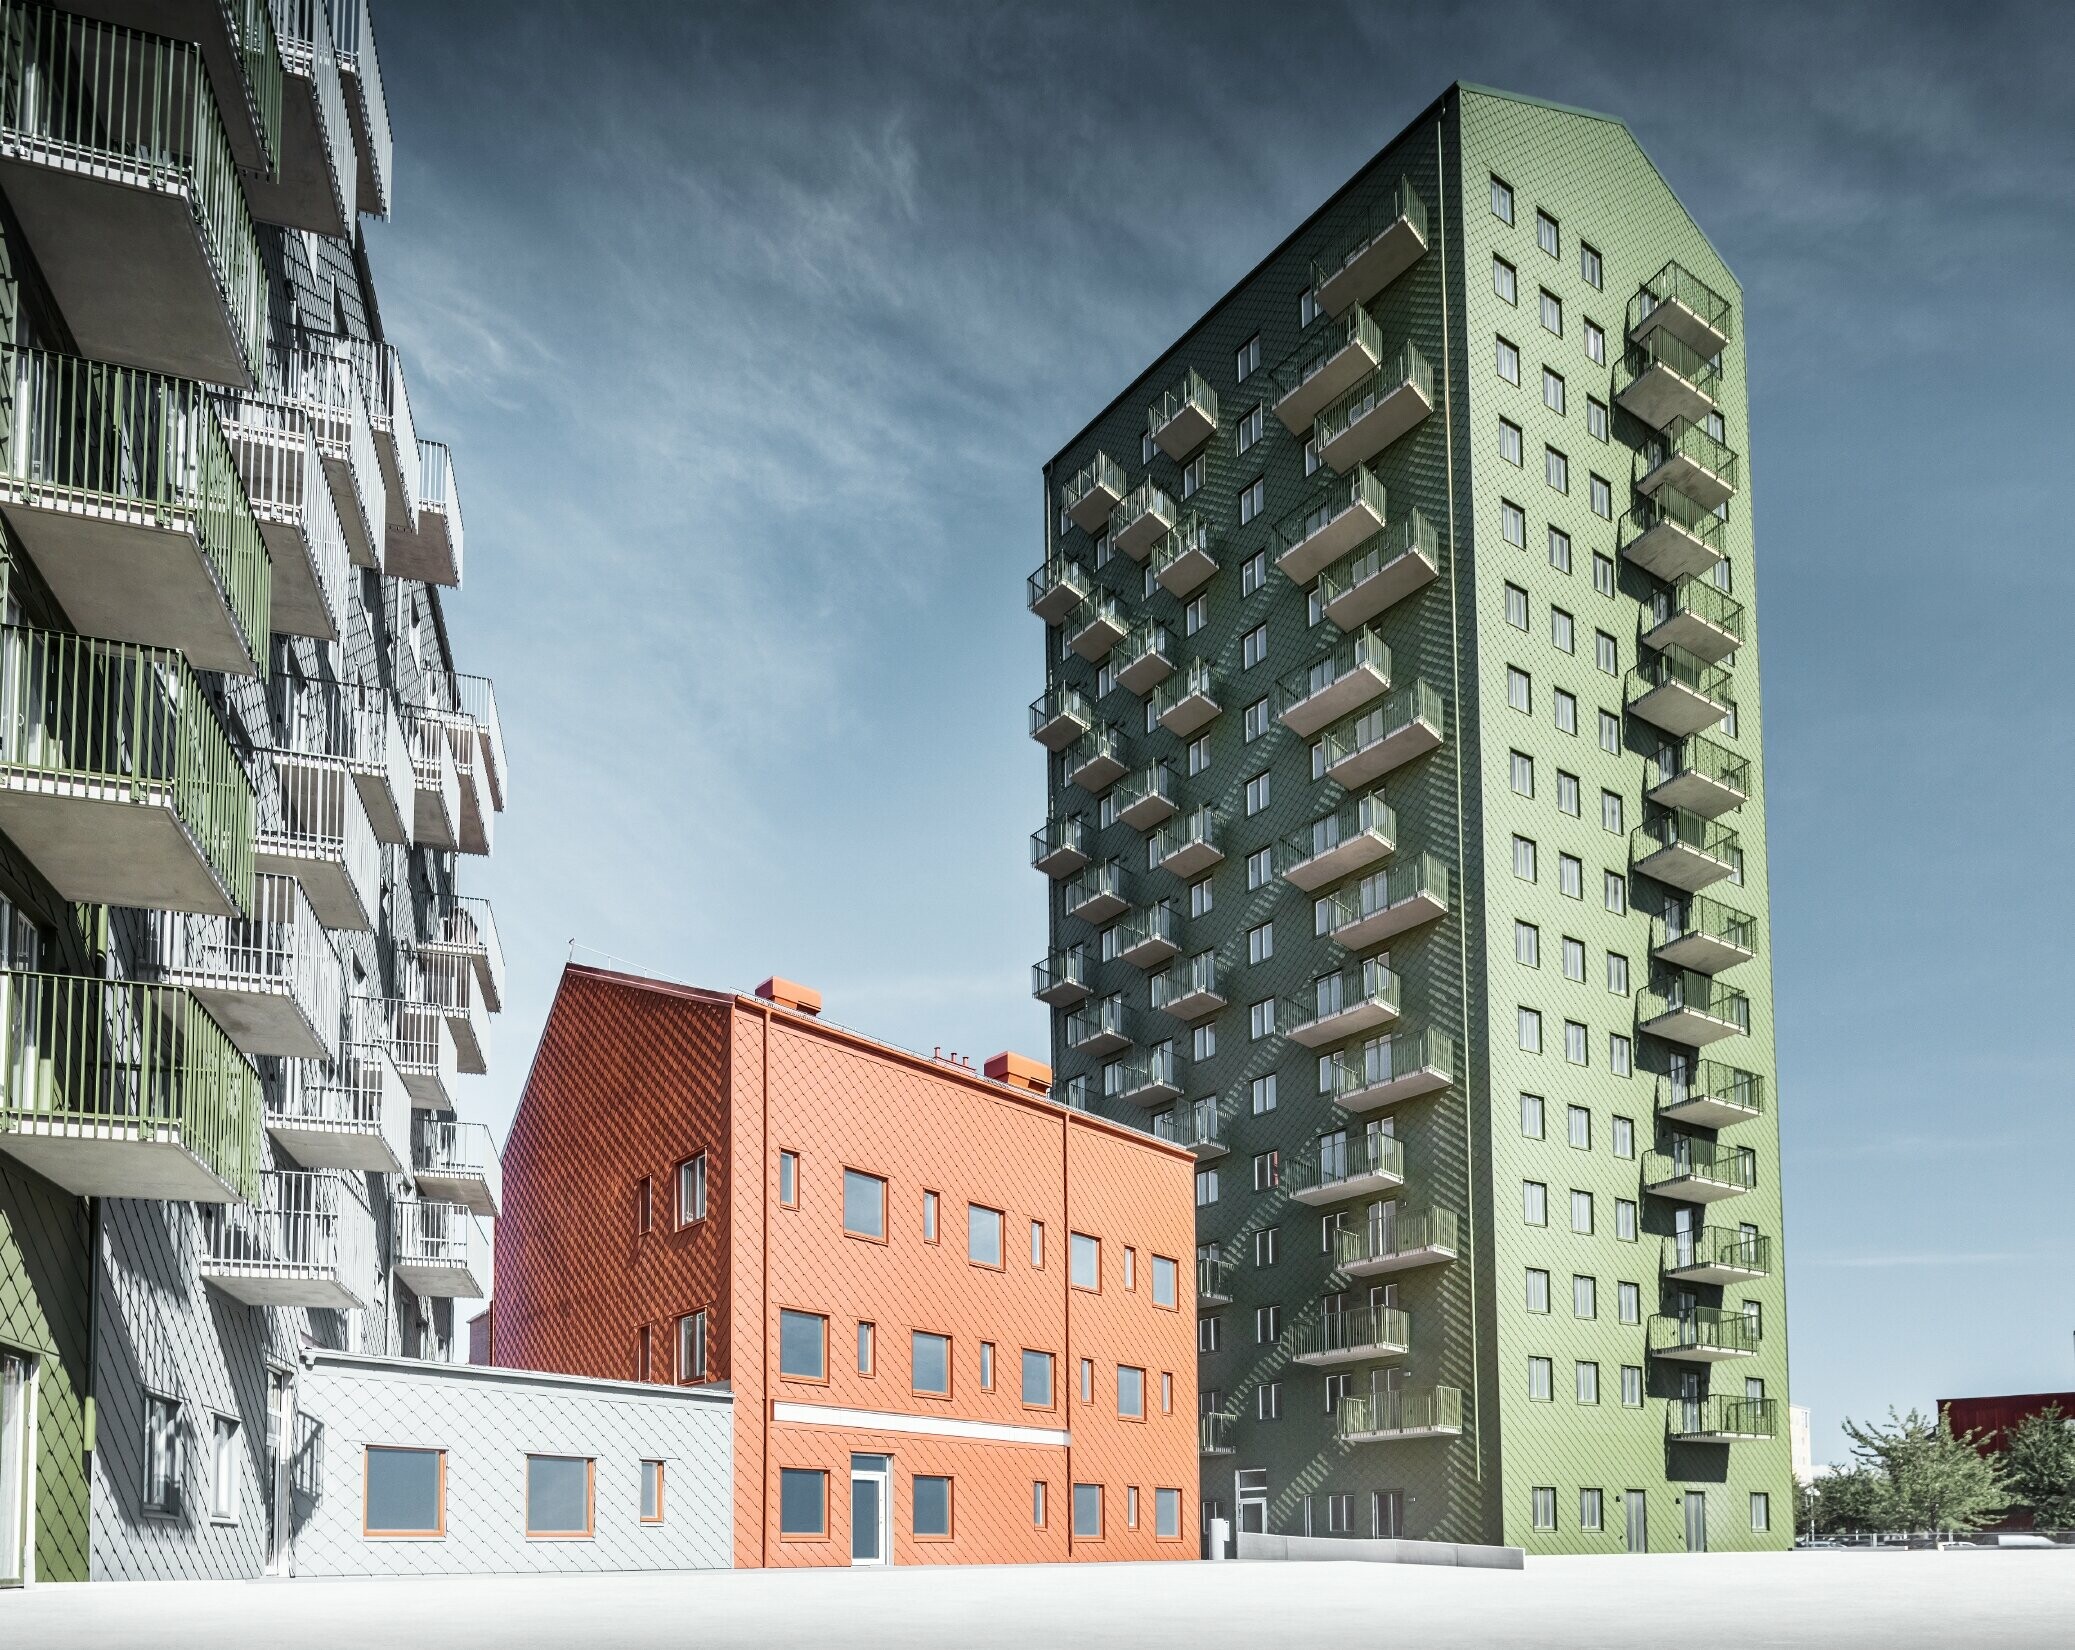 Diverse abitazioni rivestite con la scaglia 29 di PREFA nei colori verde oliva, rosso cotto e grigio chiaro a Göteborg, Svezia.